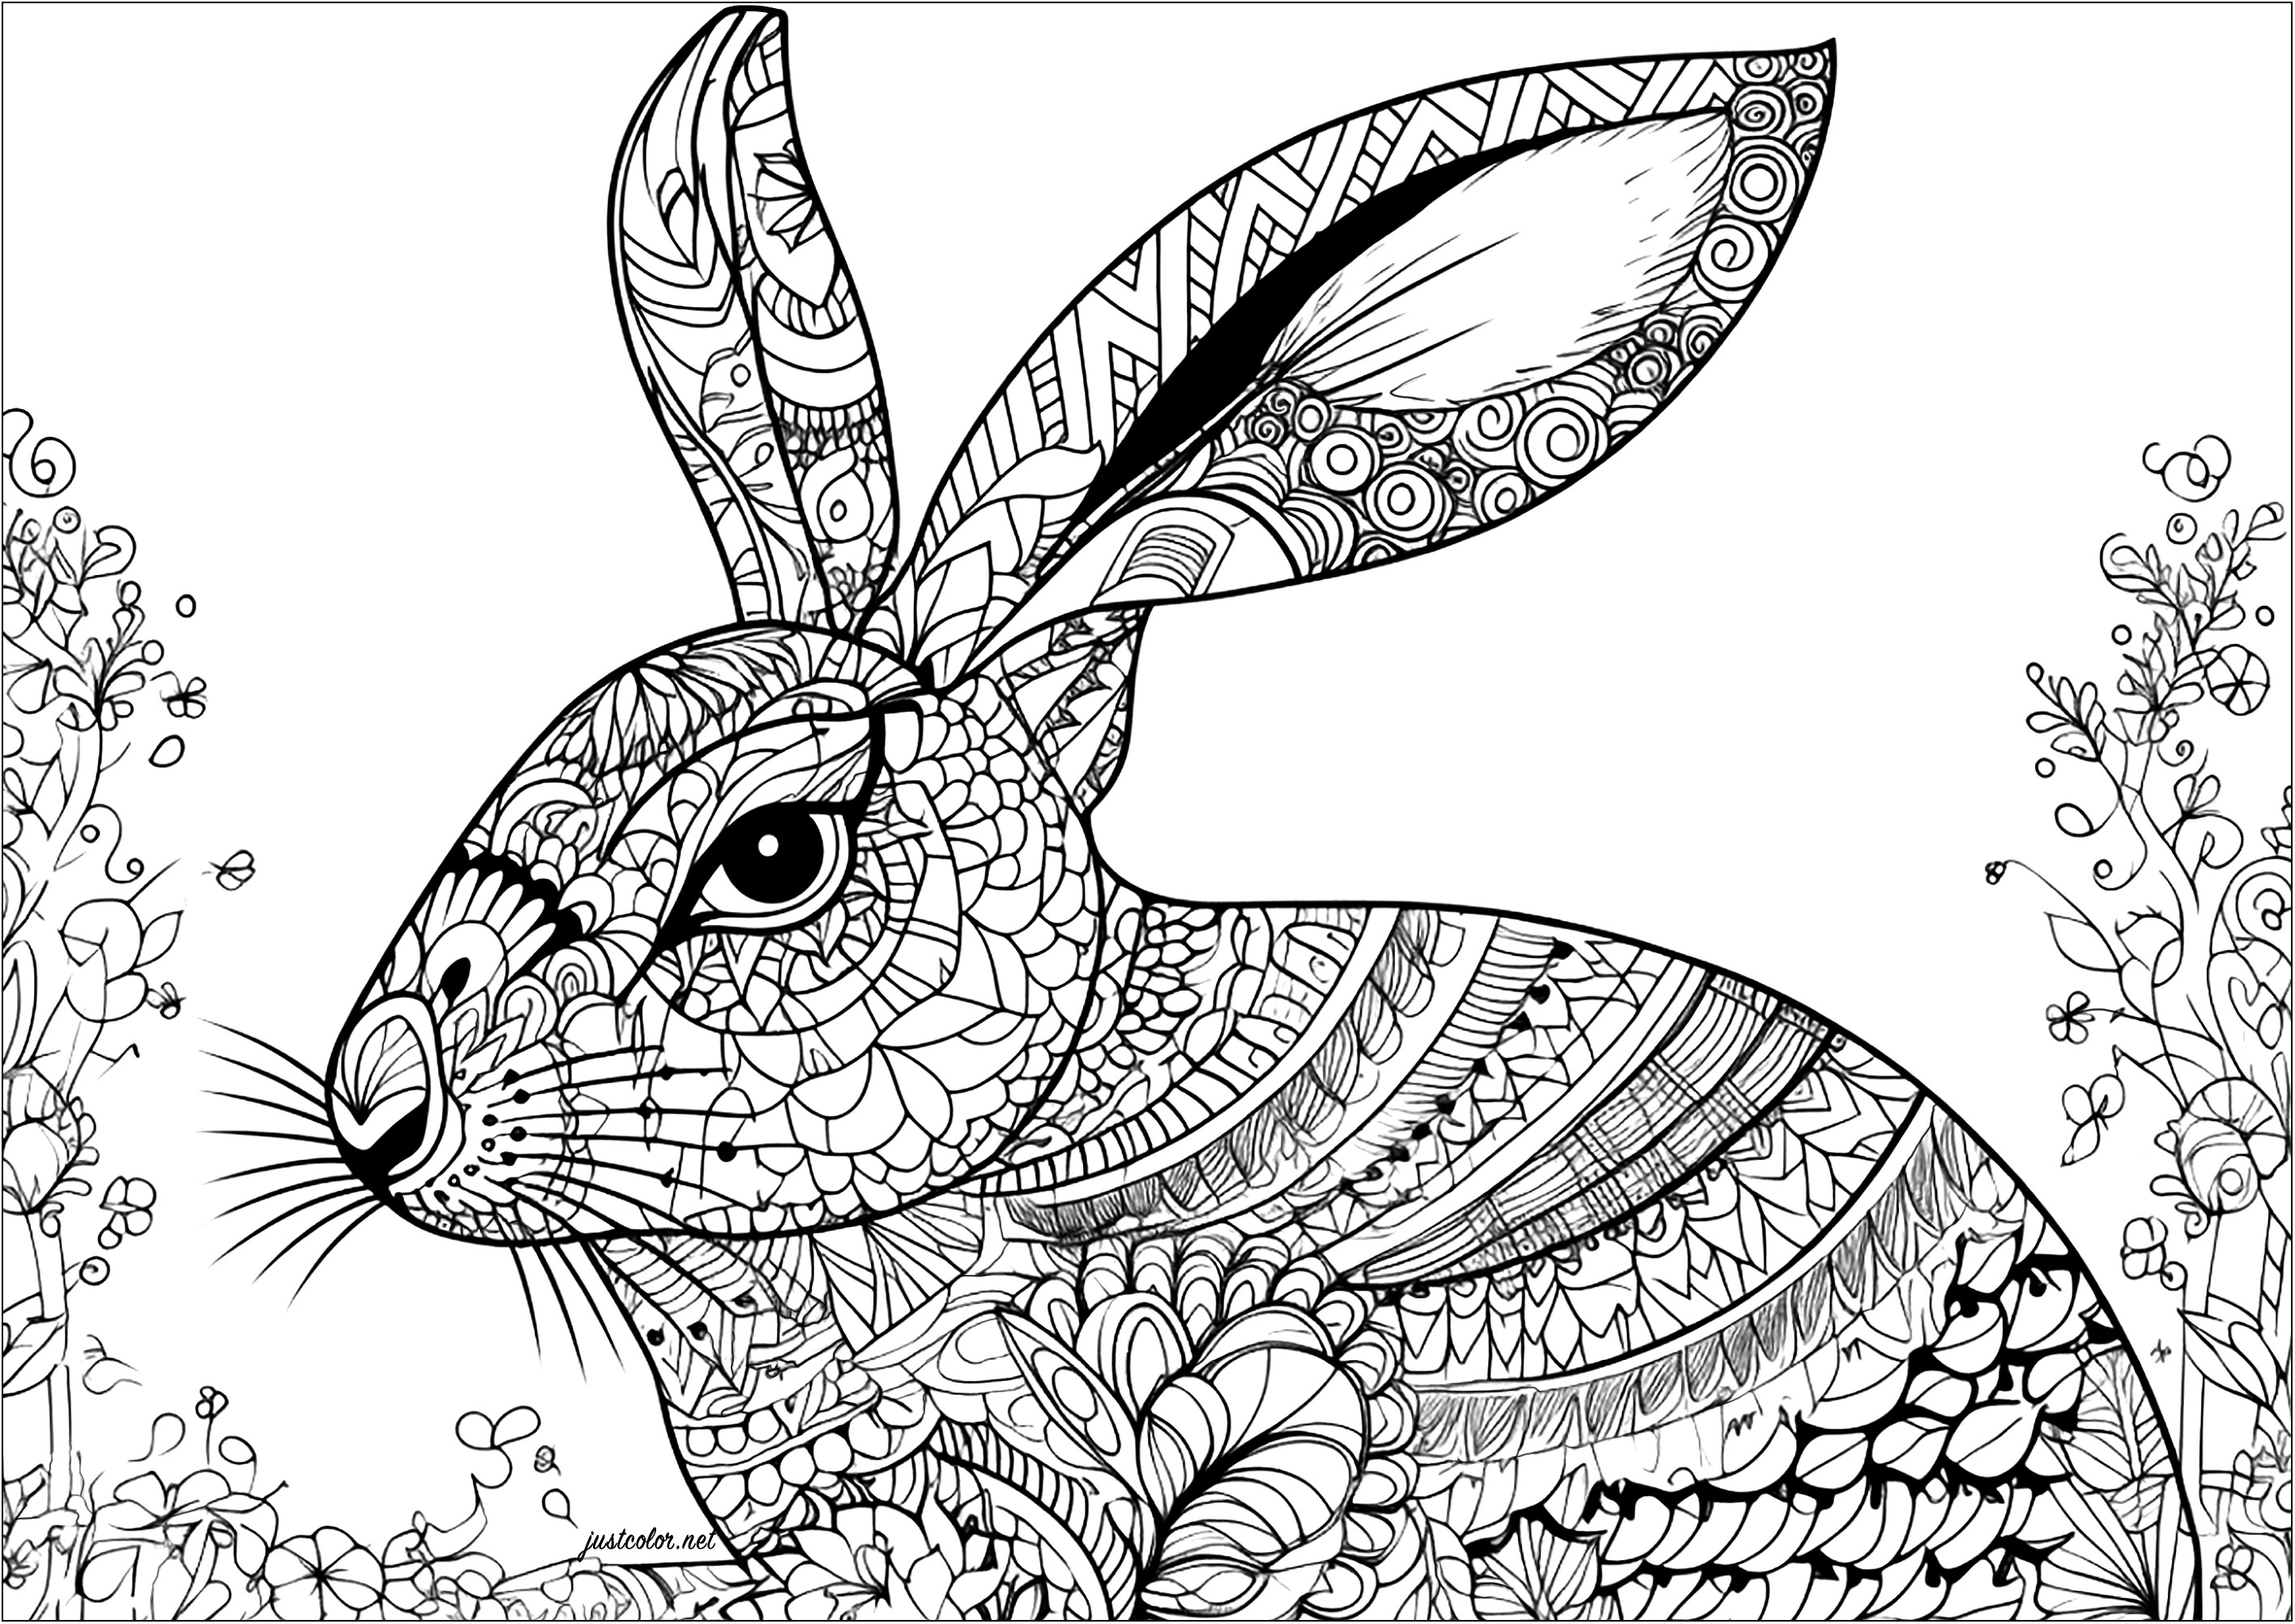 Patrones conejos y complejos. Una preciosa página para colorear de conejos con intrincados y diversos diseños. Este libro para colorear te llevará mucho tiempo completarlo, pero seguro que te aportará una tranquilidad óptima.